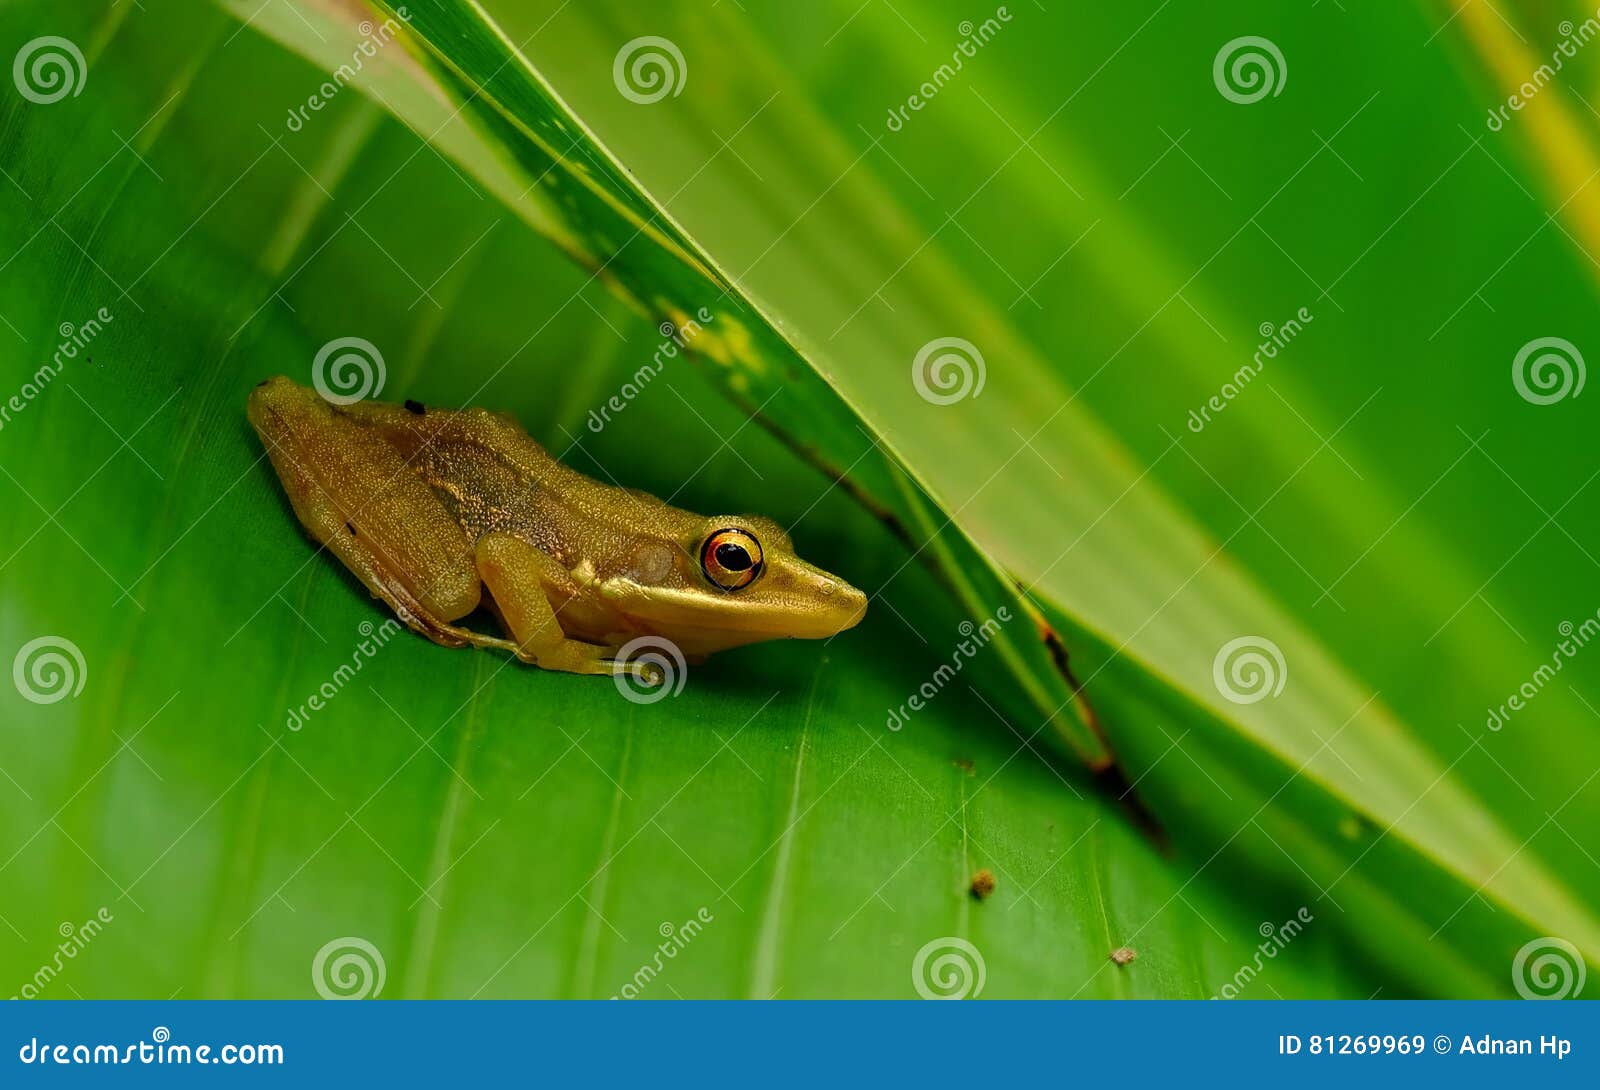 Однако жабе лезть было трудно. Маленькая коричневая лягушка. Банан лягушка коричневая. Банановая лягушка на руке. Коричневые лягушки из бан-БАНА.